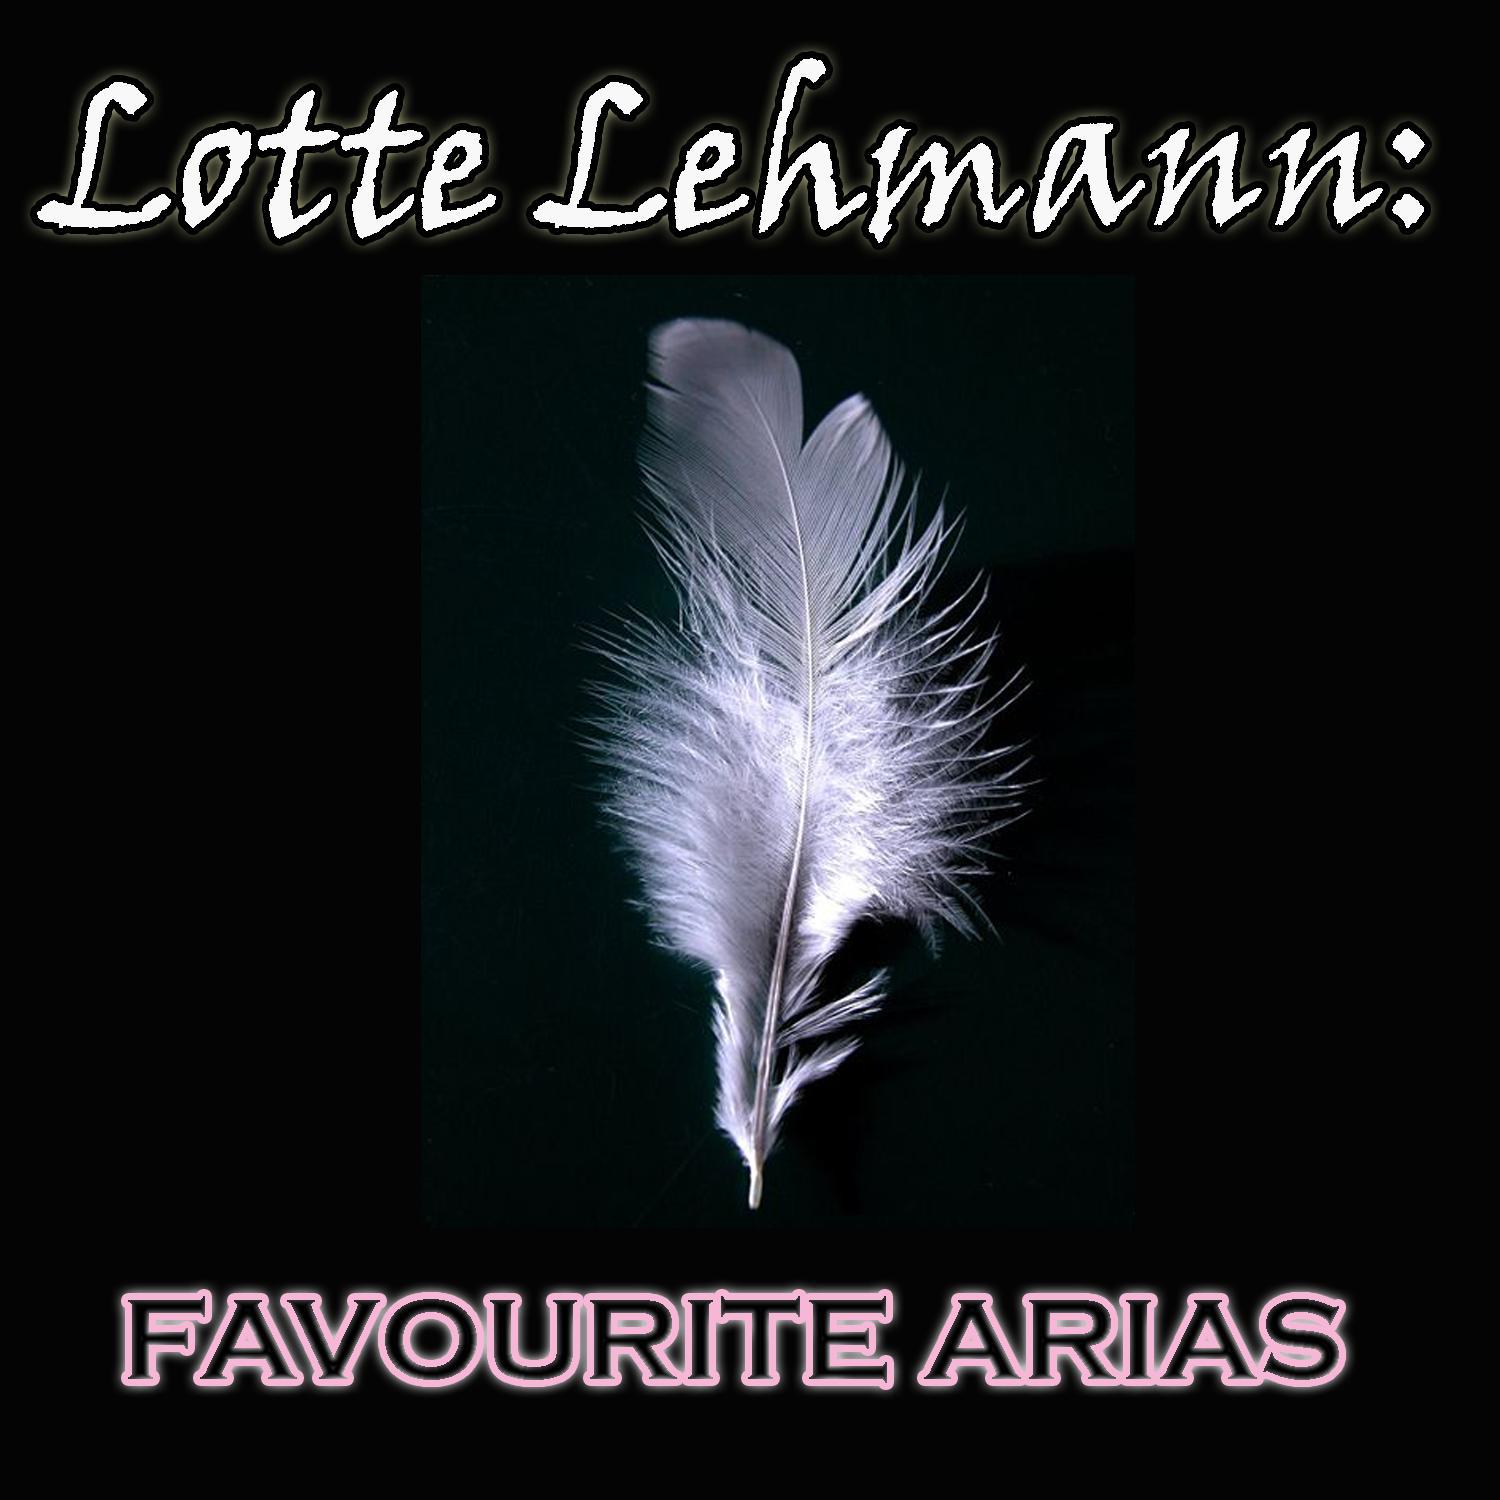 Lotte Lehmann - Favourite Arias专辑